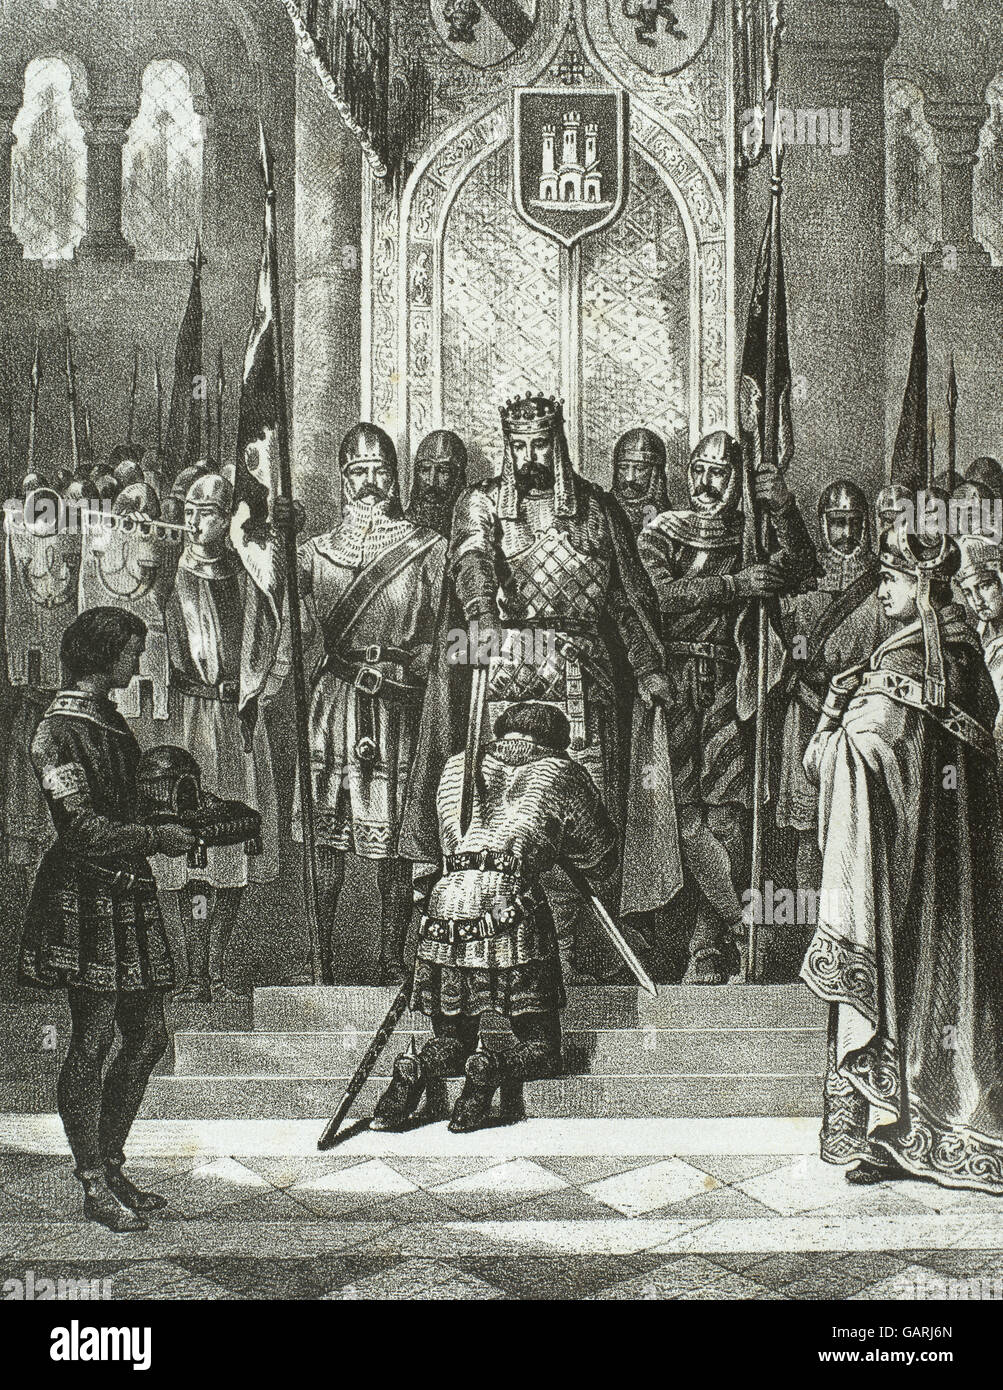 Alfonso IX (1171-1230). König von Leon. Alfonso IX werden von Alfonso VIII (1155-1214) zum Ritter geschlagen. Gravur in Spanien Illustrated History, 19. Jahrhundert. Stockfoto